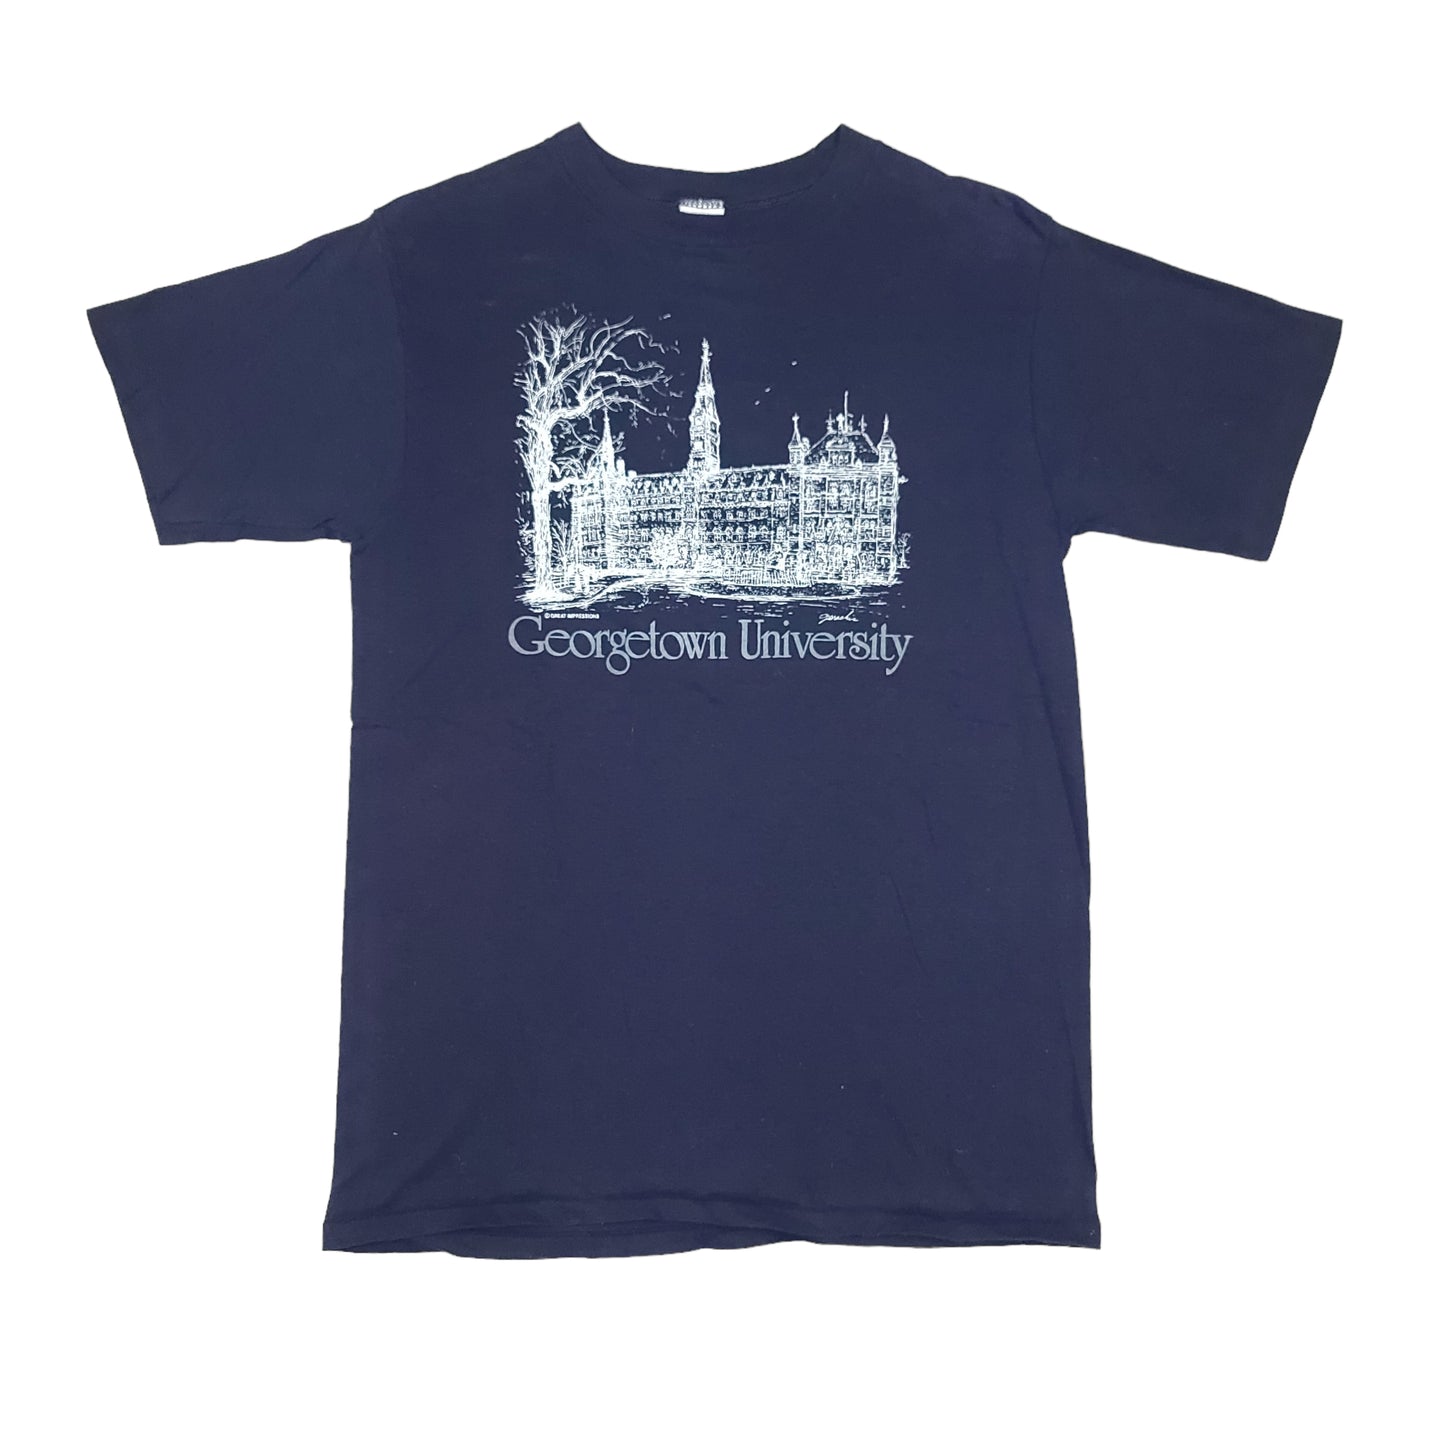 Vintage Georgetown University Navy Blue Tee